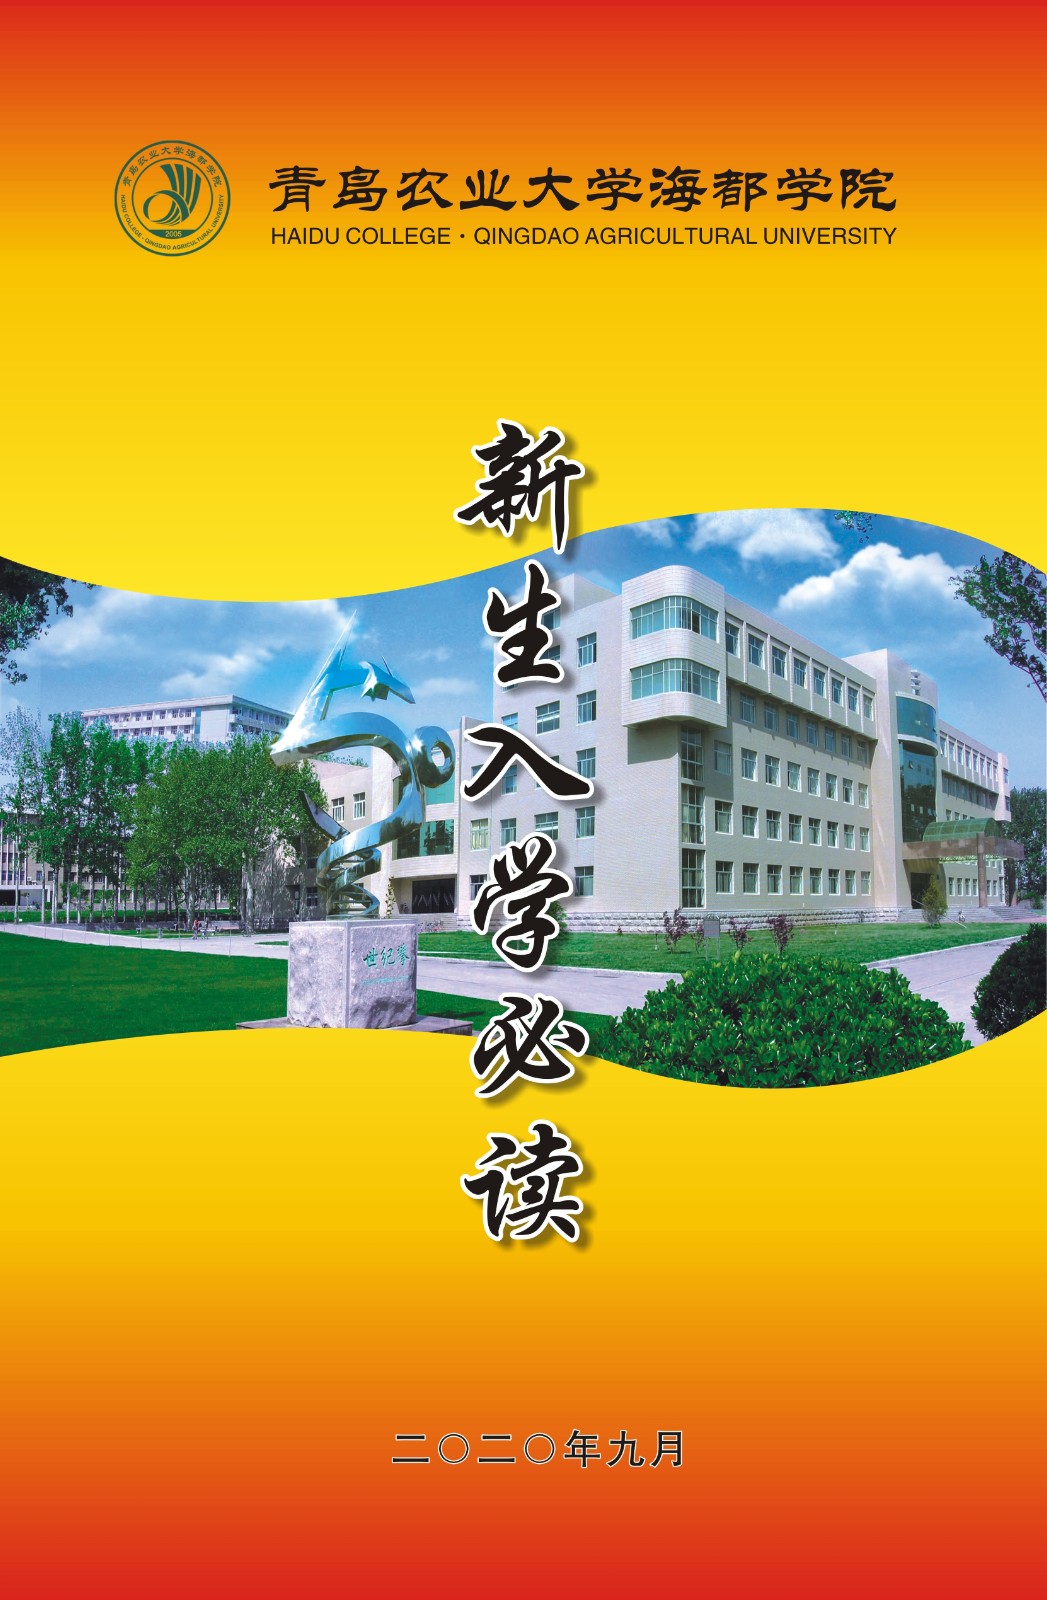 青岛农业大学海都学院2020级新生报到指南